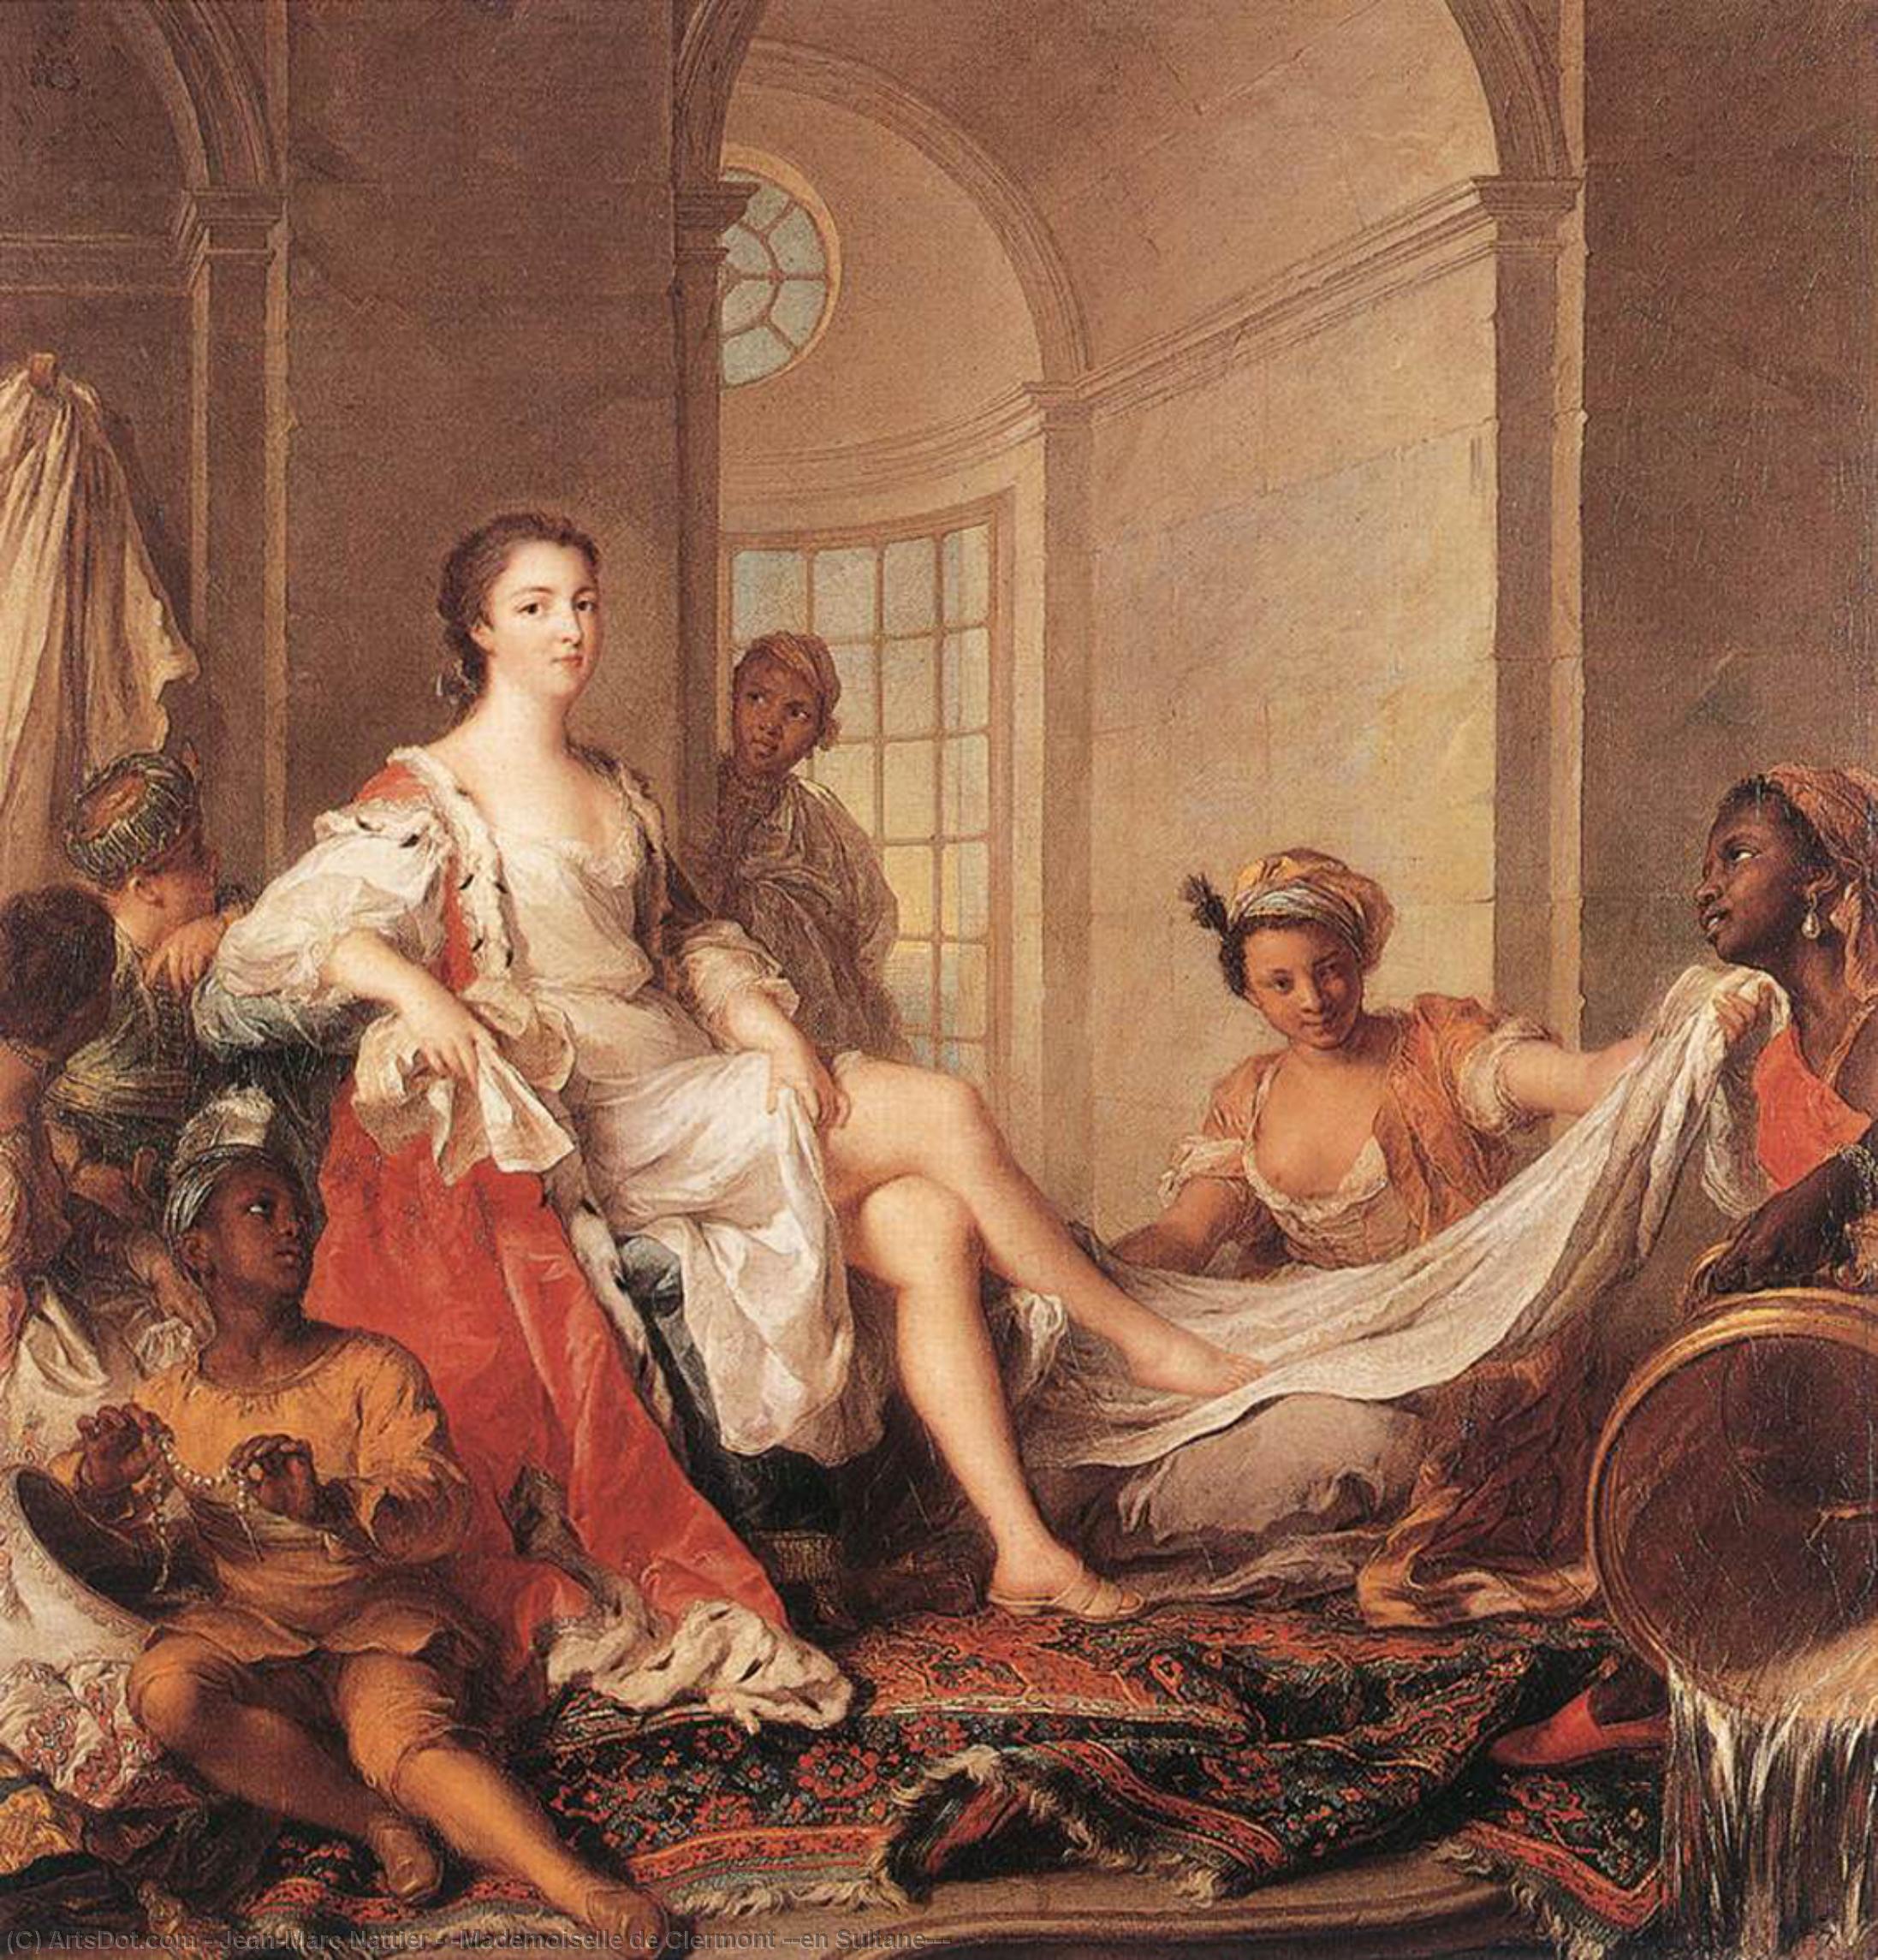 Achat Reproductions De Peintures `Mademoiselle de Clermont`en Sultane`` `, 1733 de Jean-Marc Nattier (1685-1766, France) | ArtsDot.com